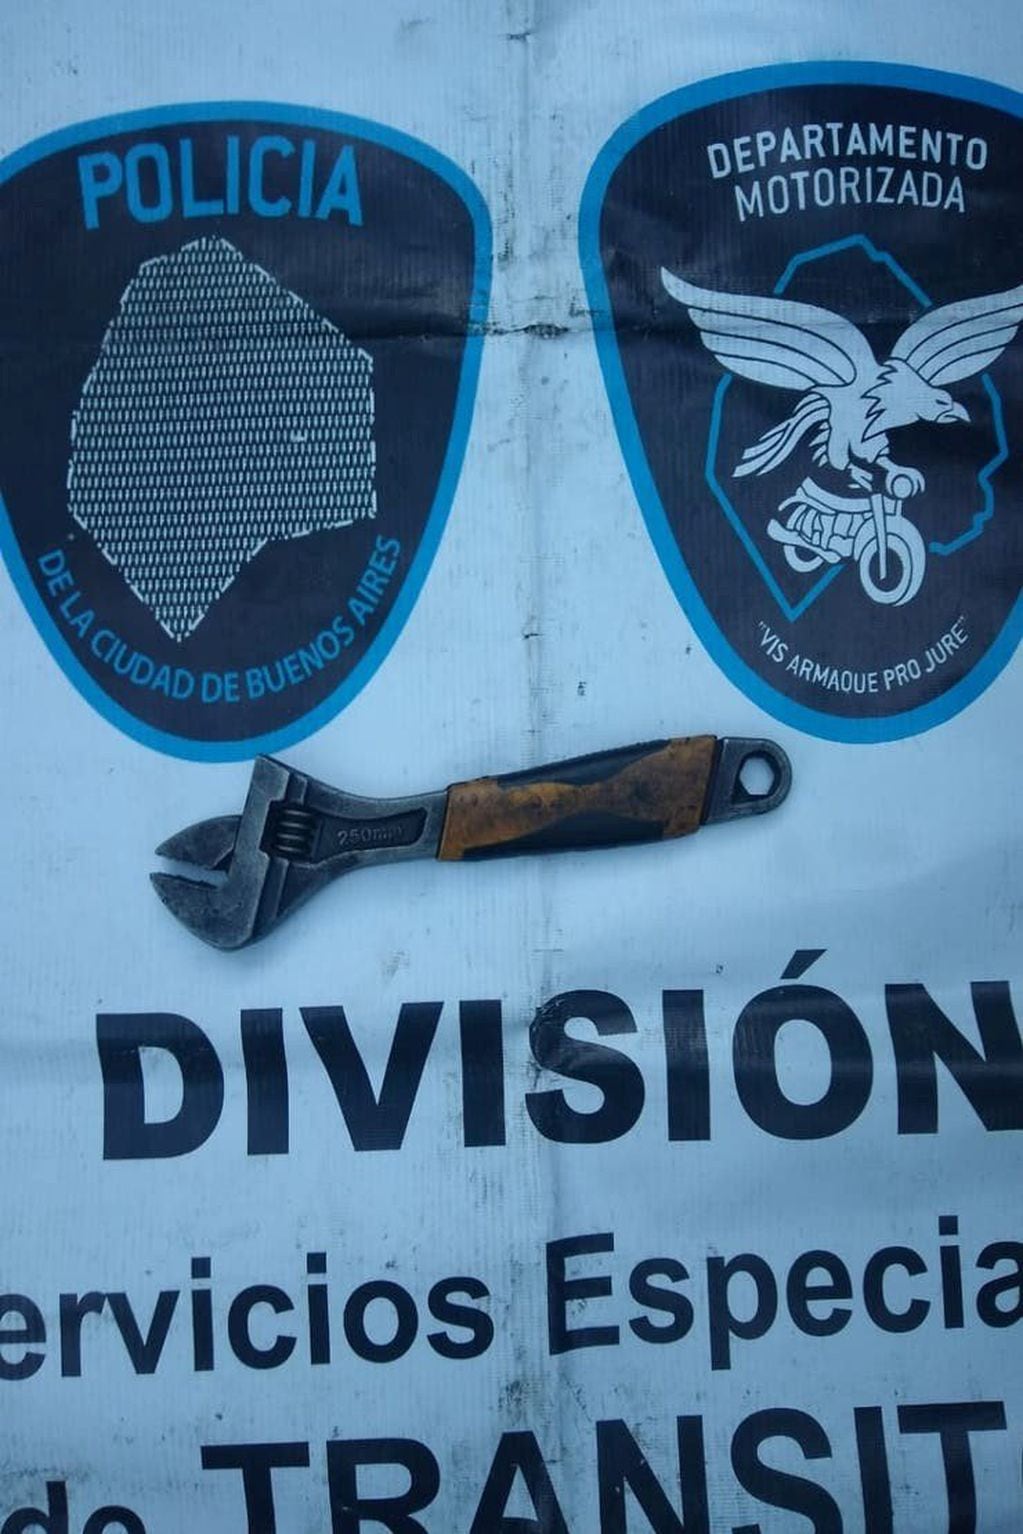 La llave francesa usada como arma (Foto: Policía de la Ciudad de Buenos Aires)